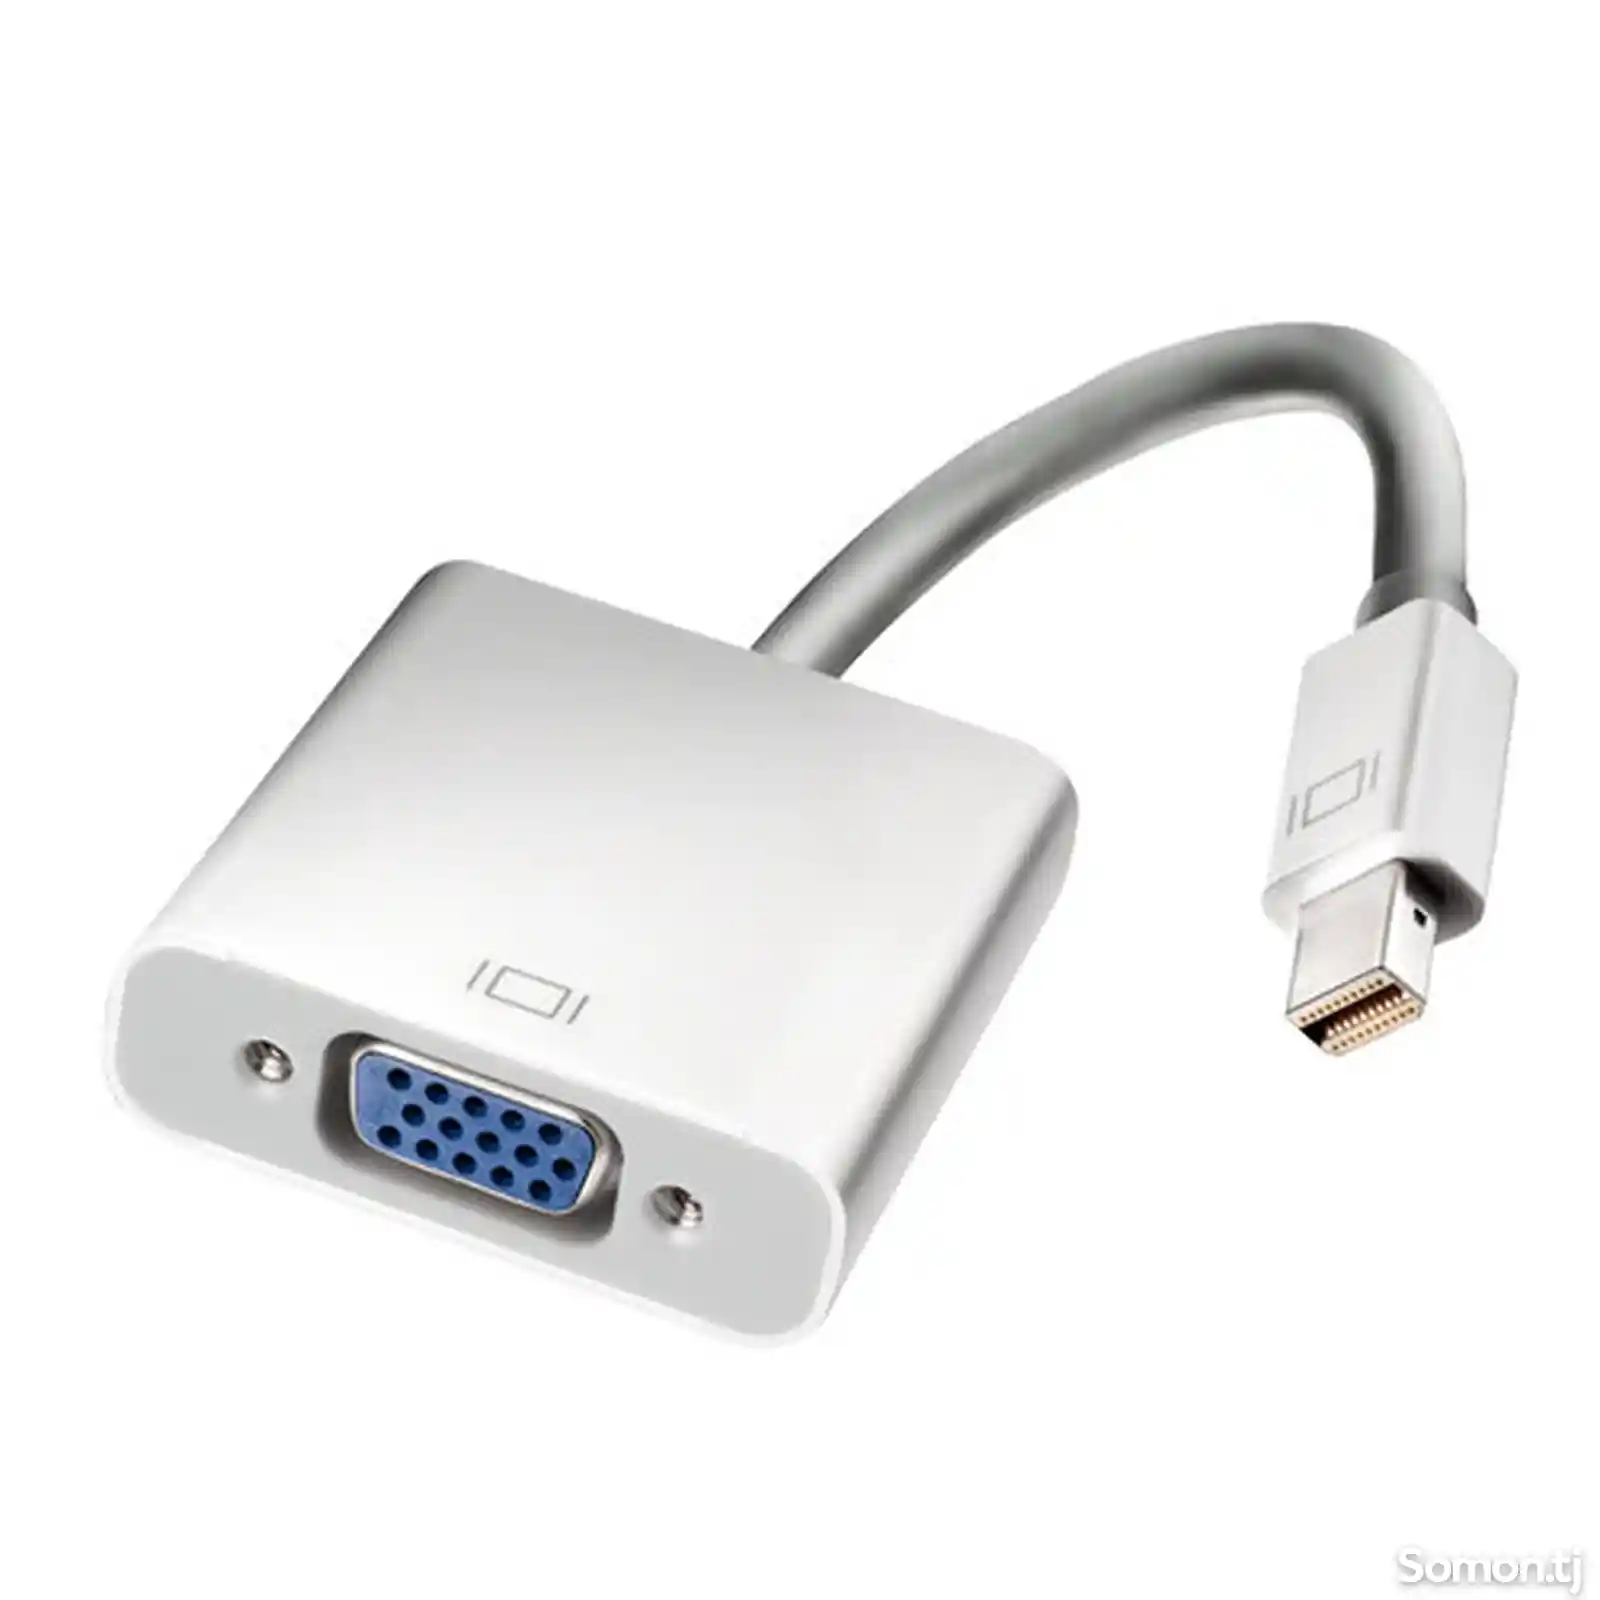 Переходник mini DisplayPort to VGA для macbook ноутбуков - VGA-11